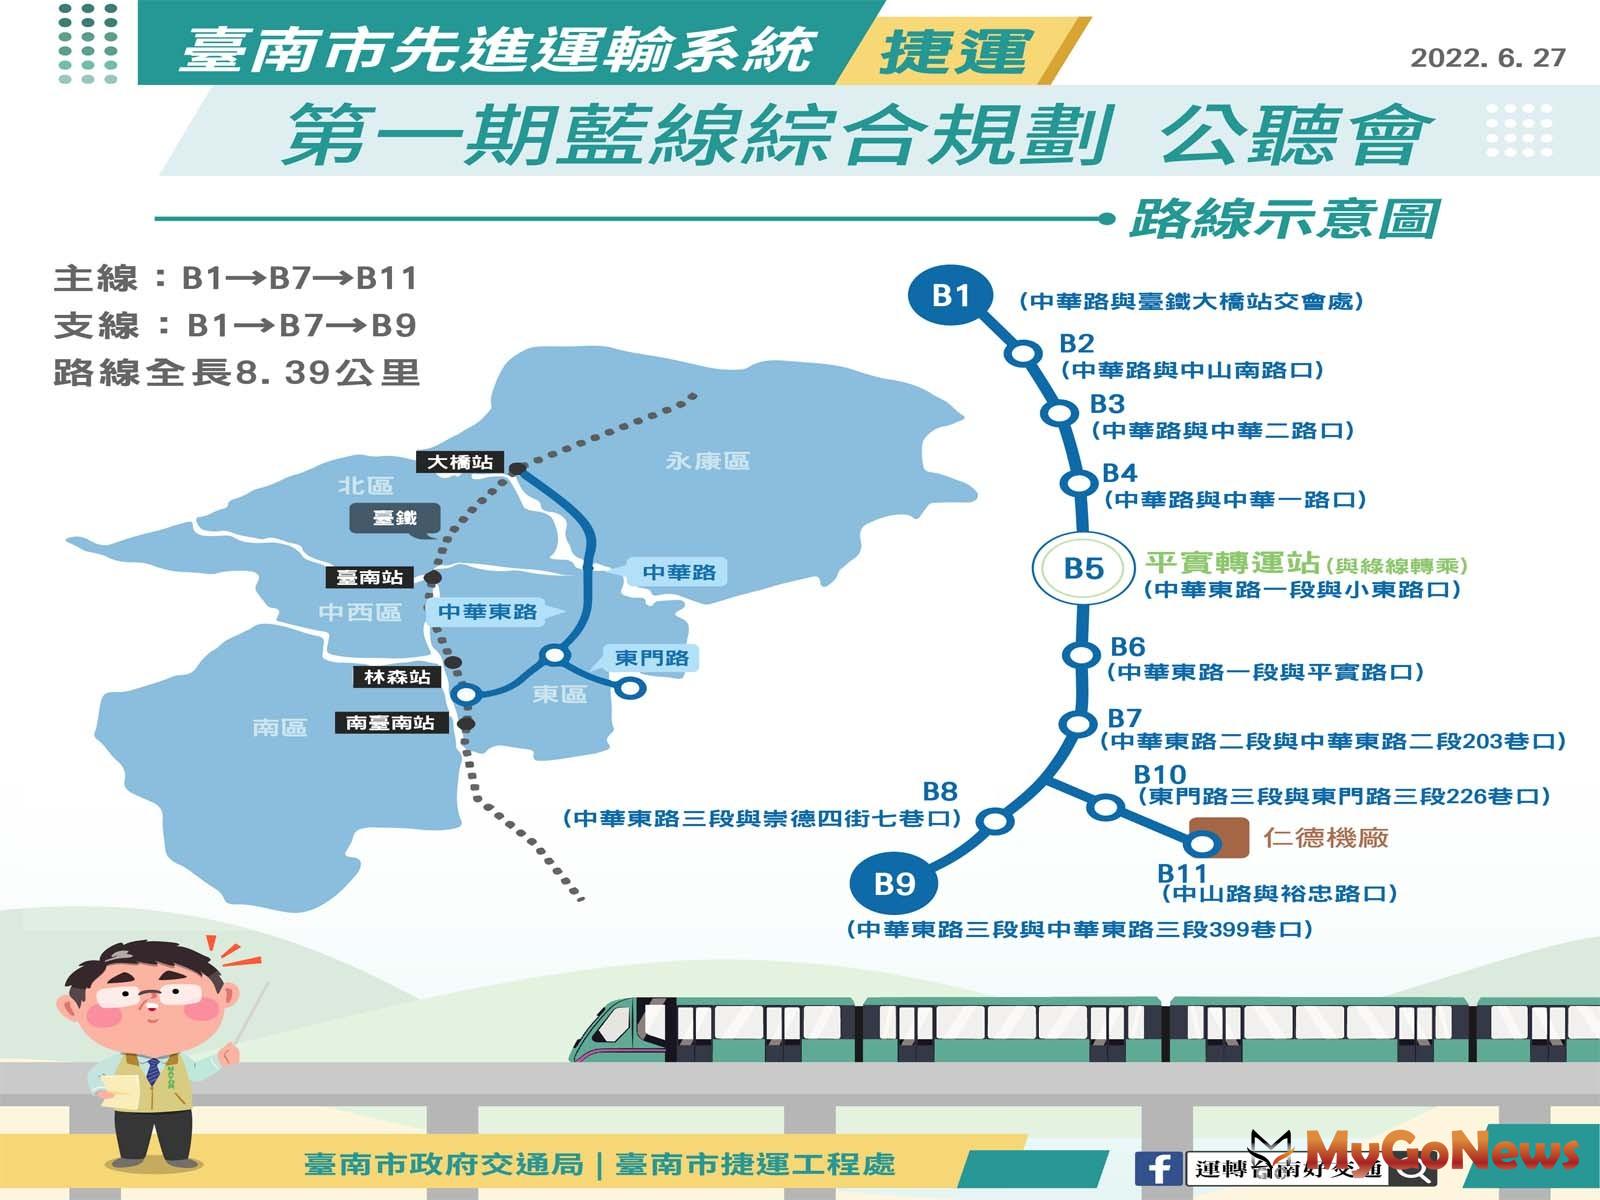 台南第一期藍線綜合規劃提送交通部審議